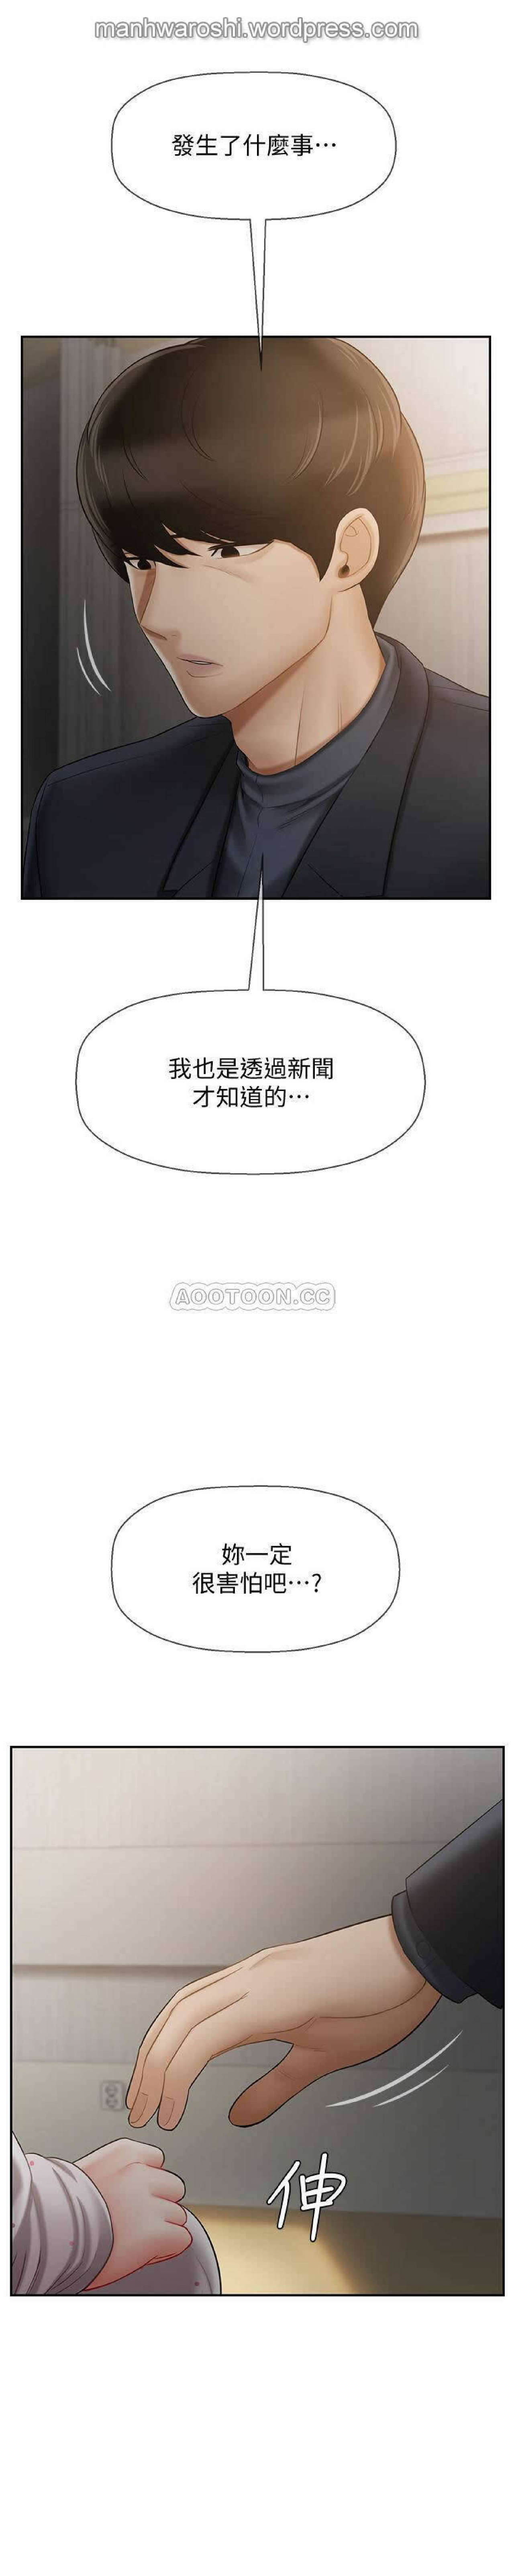 坏老师 | PHYSICAL CLASSROOM 12 [Chinese] Manhwa 